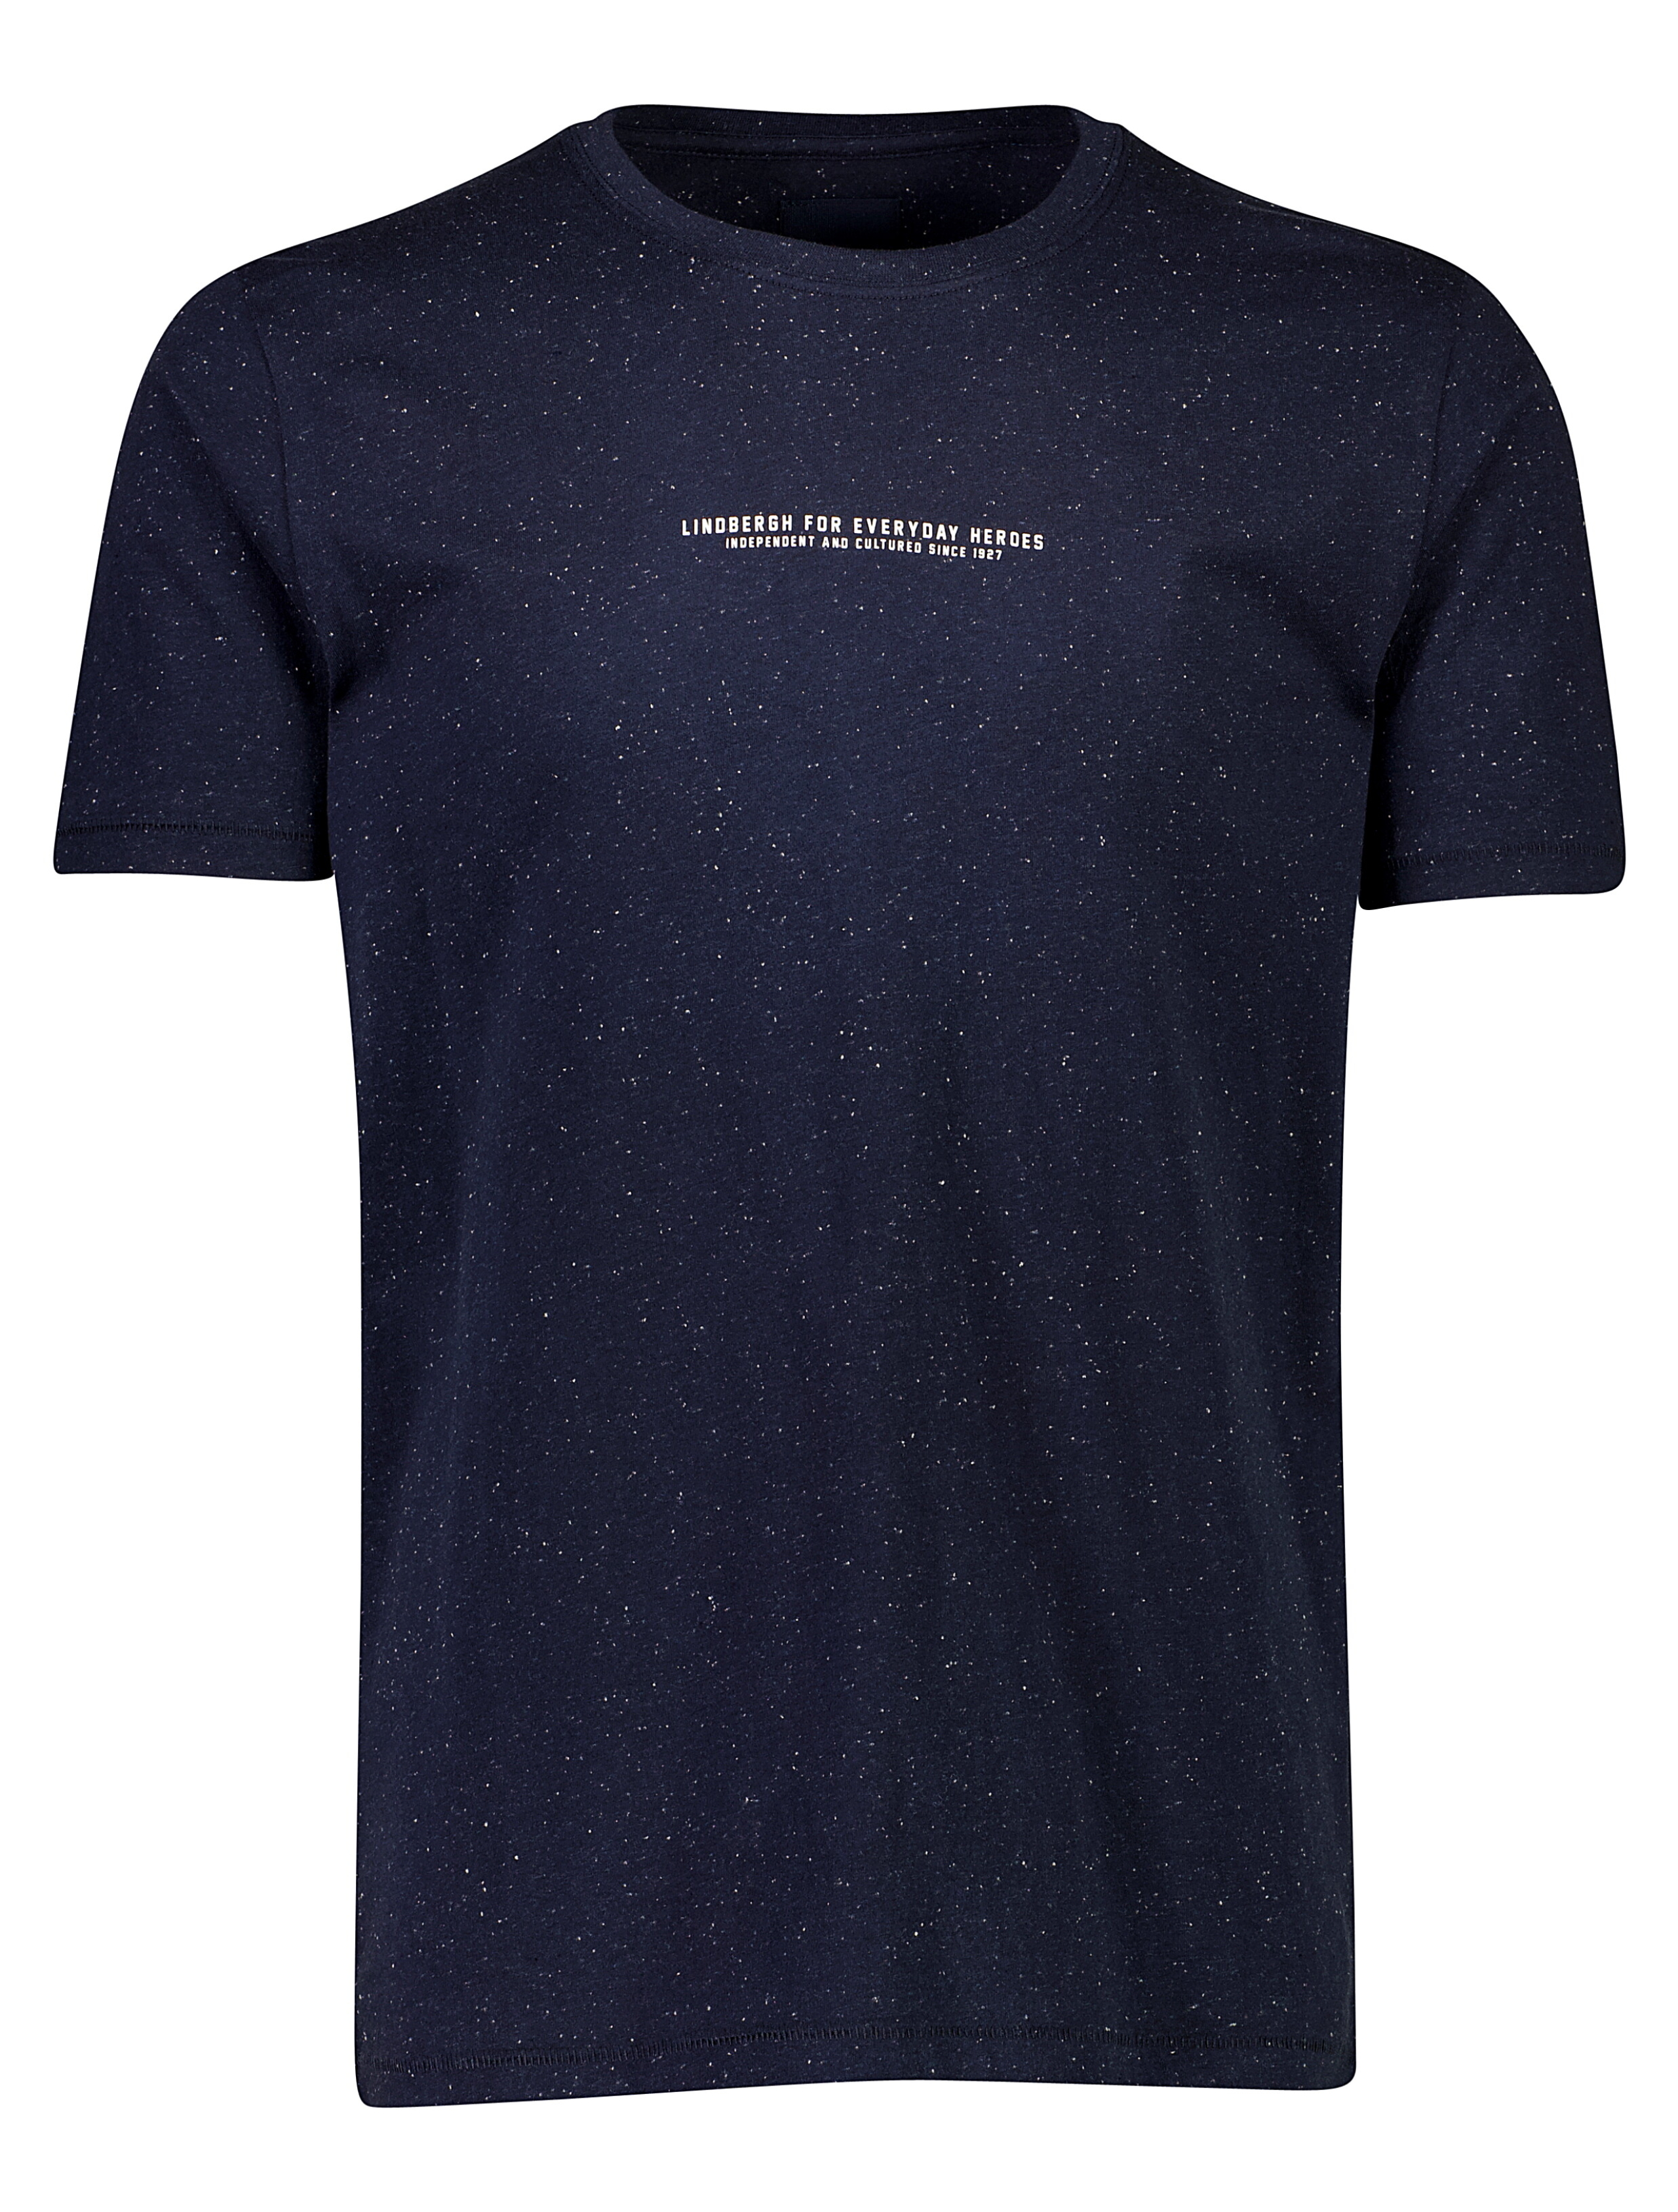 Lindbergh T-shirt blå / navy